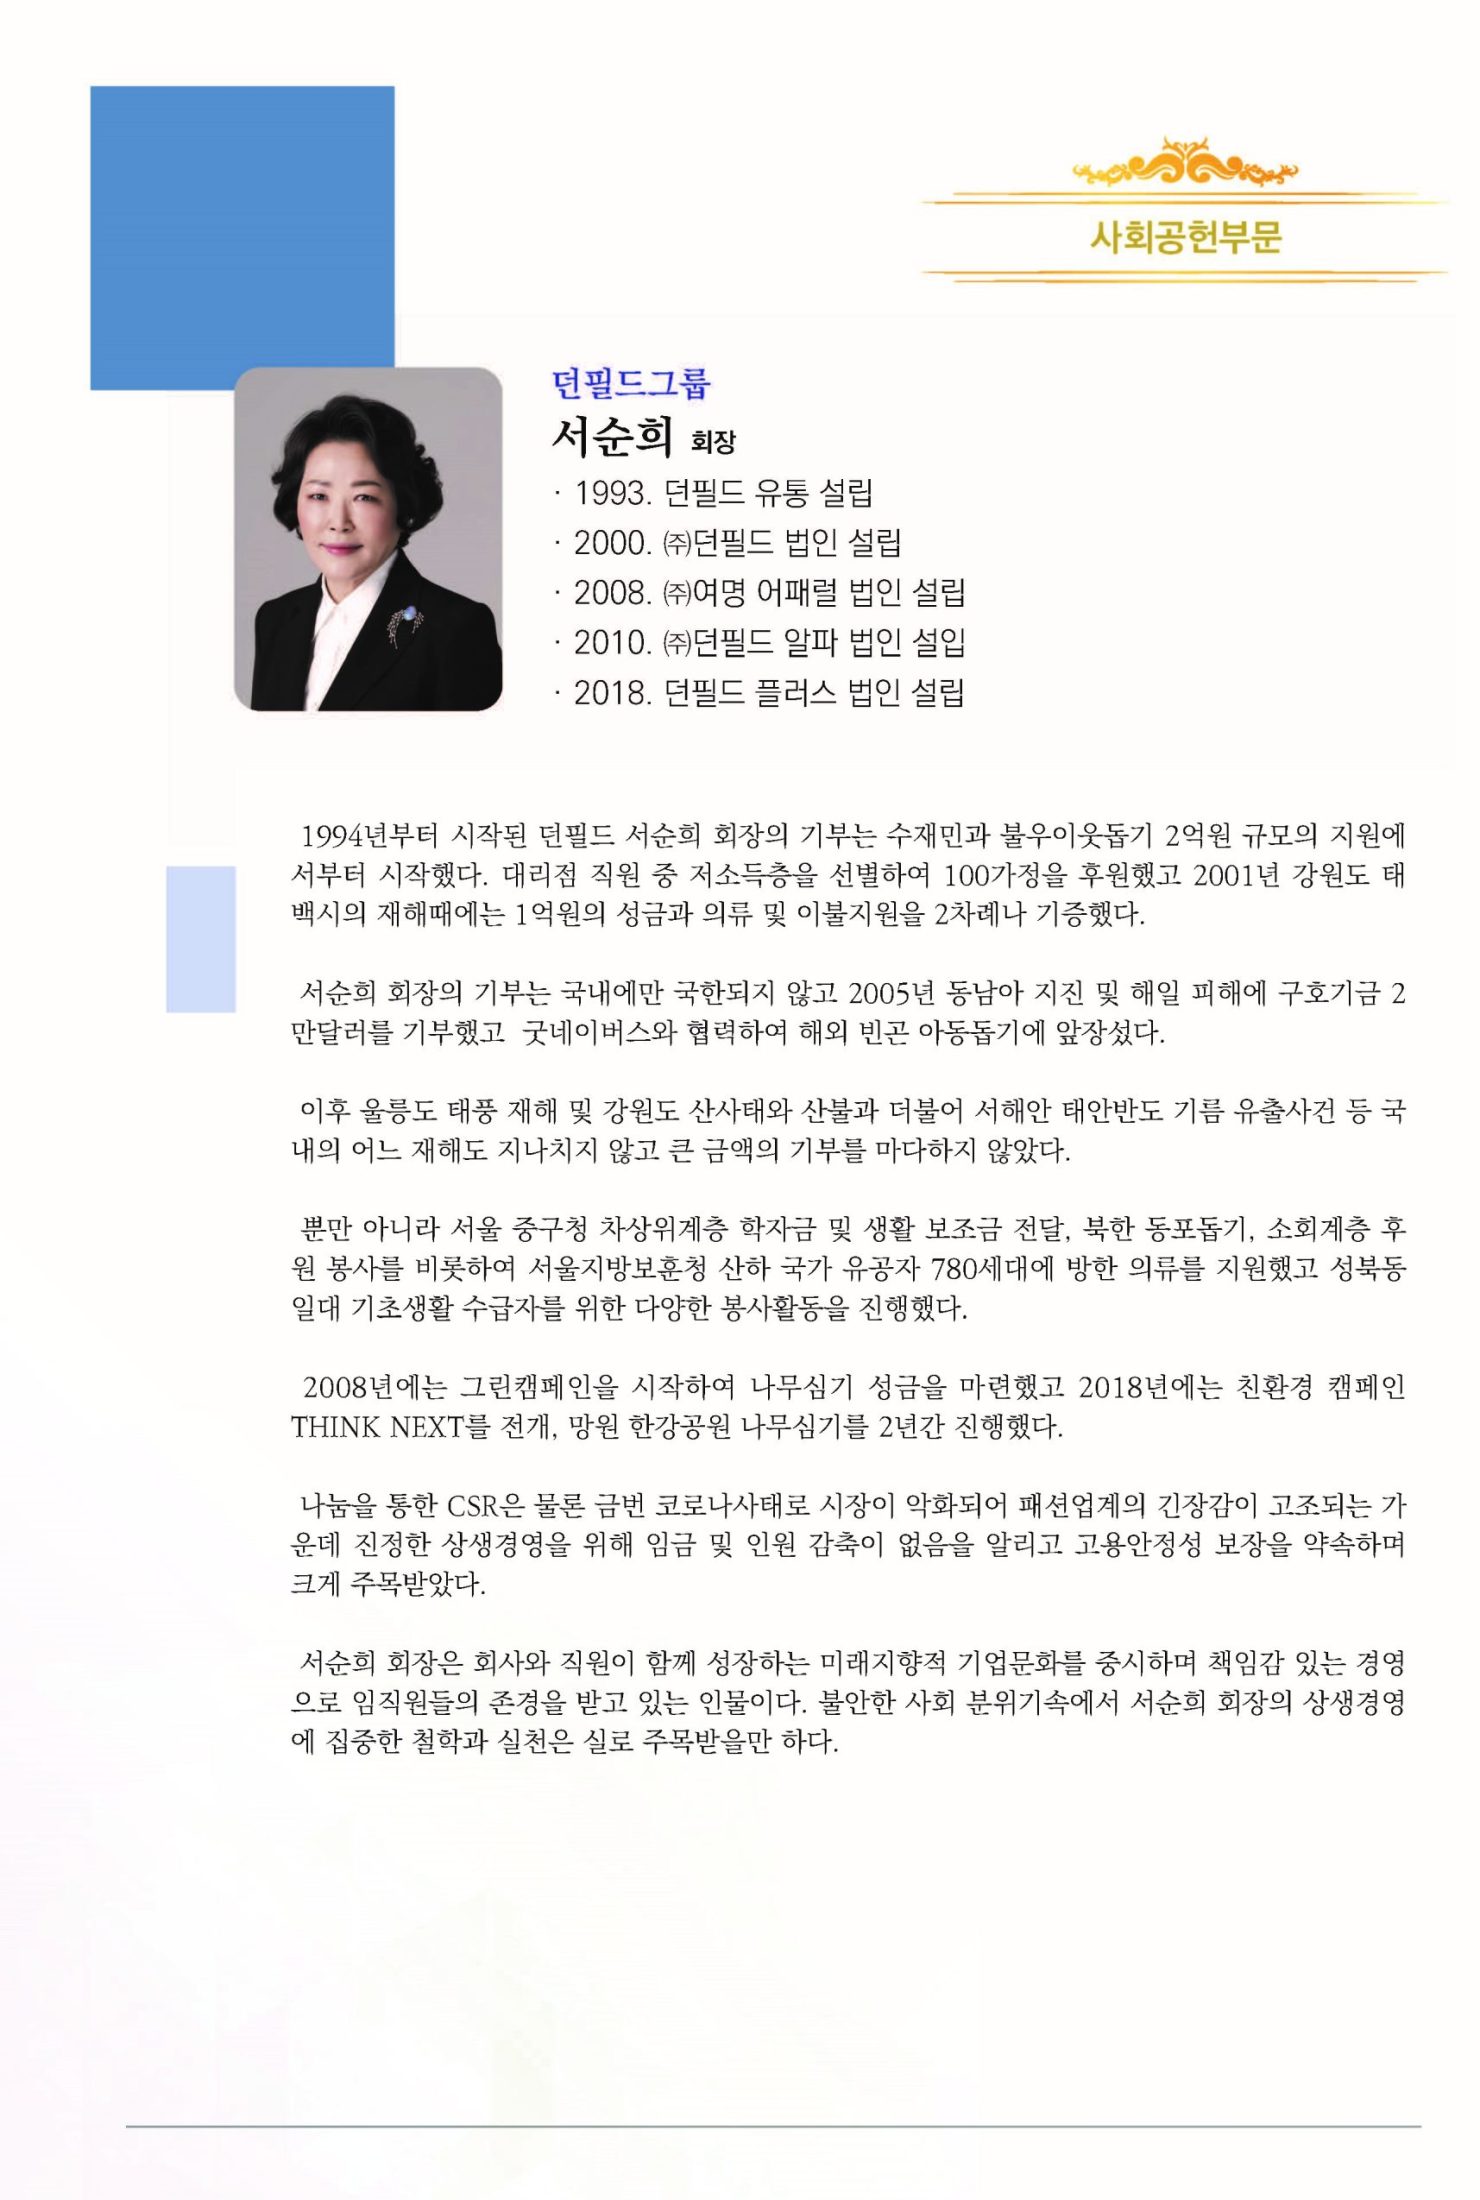 6회 HDI 인간경영대상 시상식(책자)_20201014(2)_페이지_06